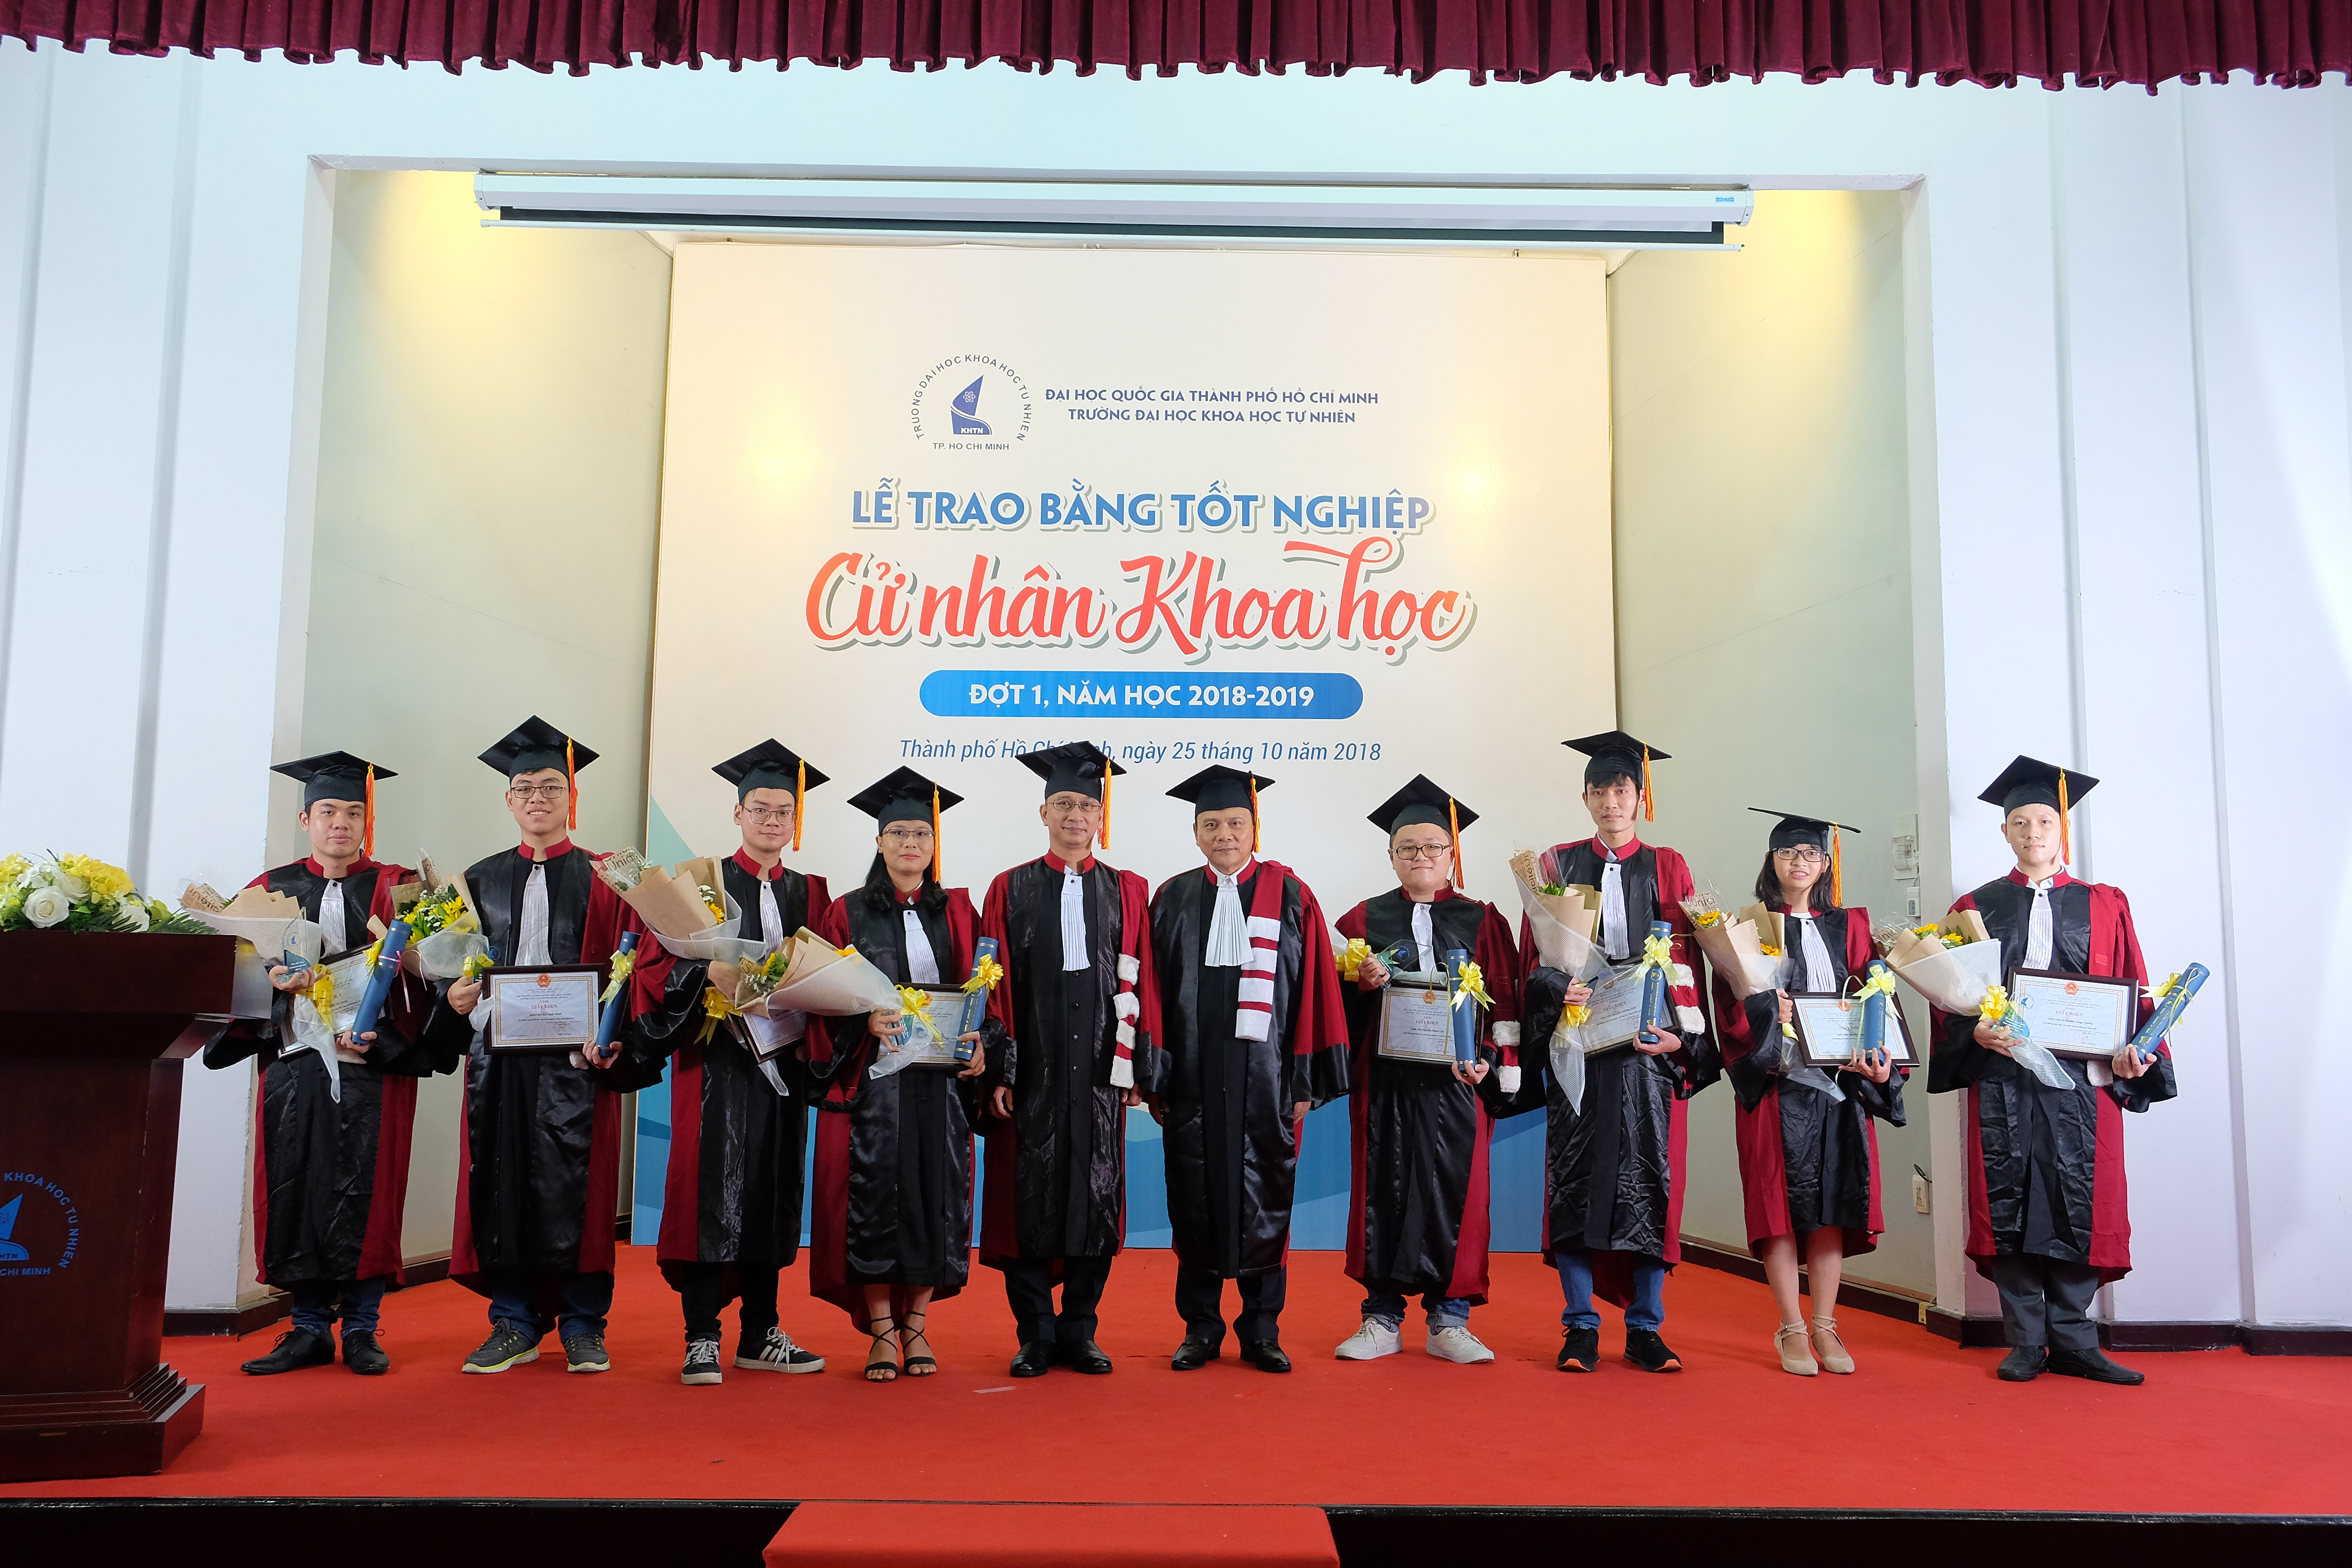 Trường ĐH KHTN, ĐHQG-HCM: 1.318 sinh viên nhận bằng Tốt nghiệp Cử nhân Khoa học